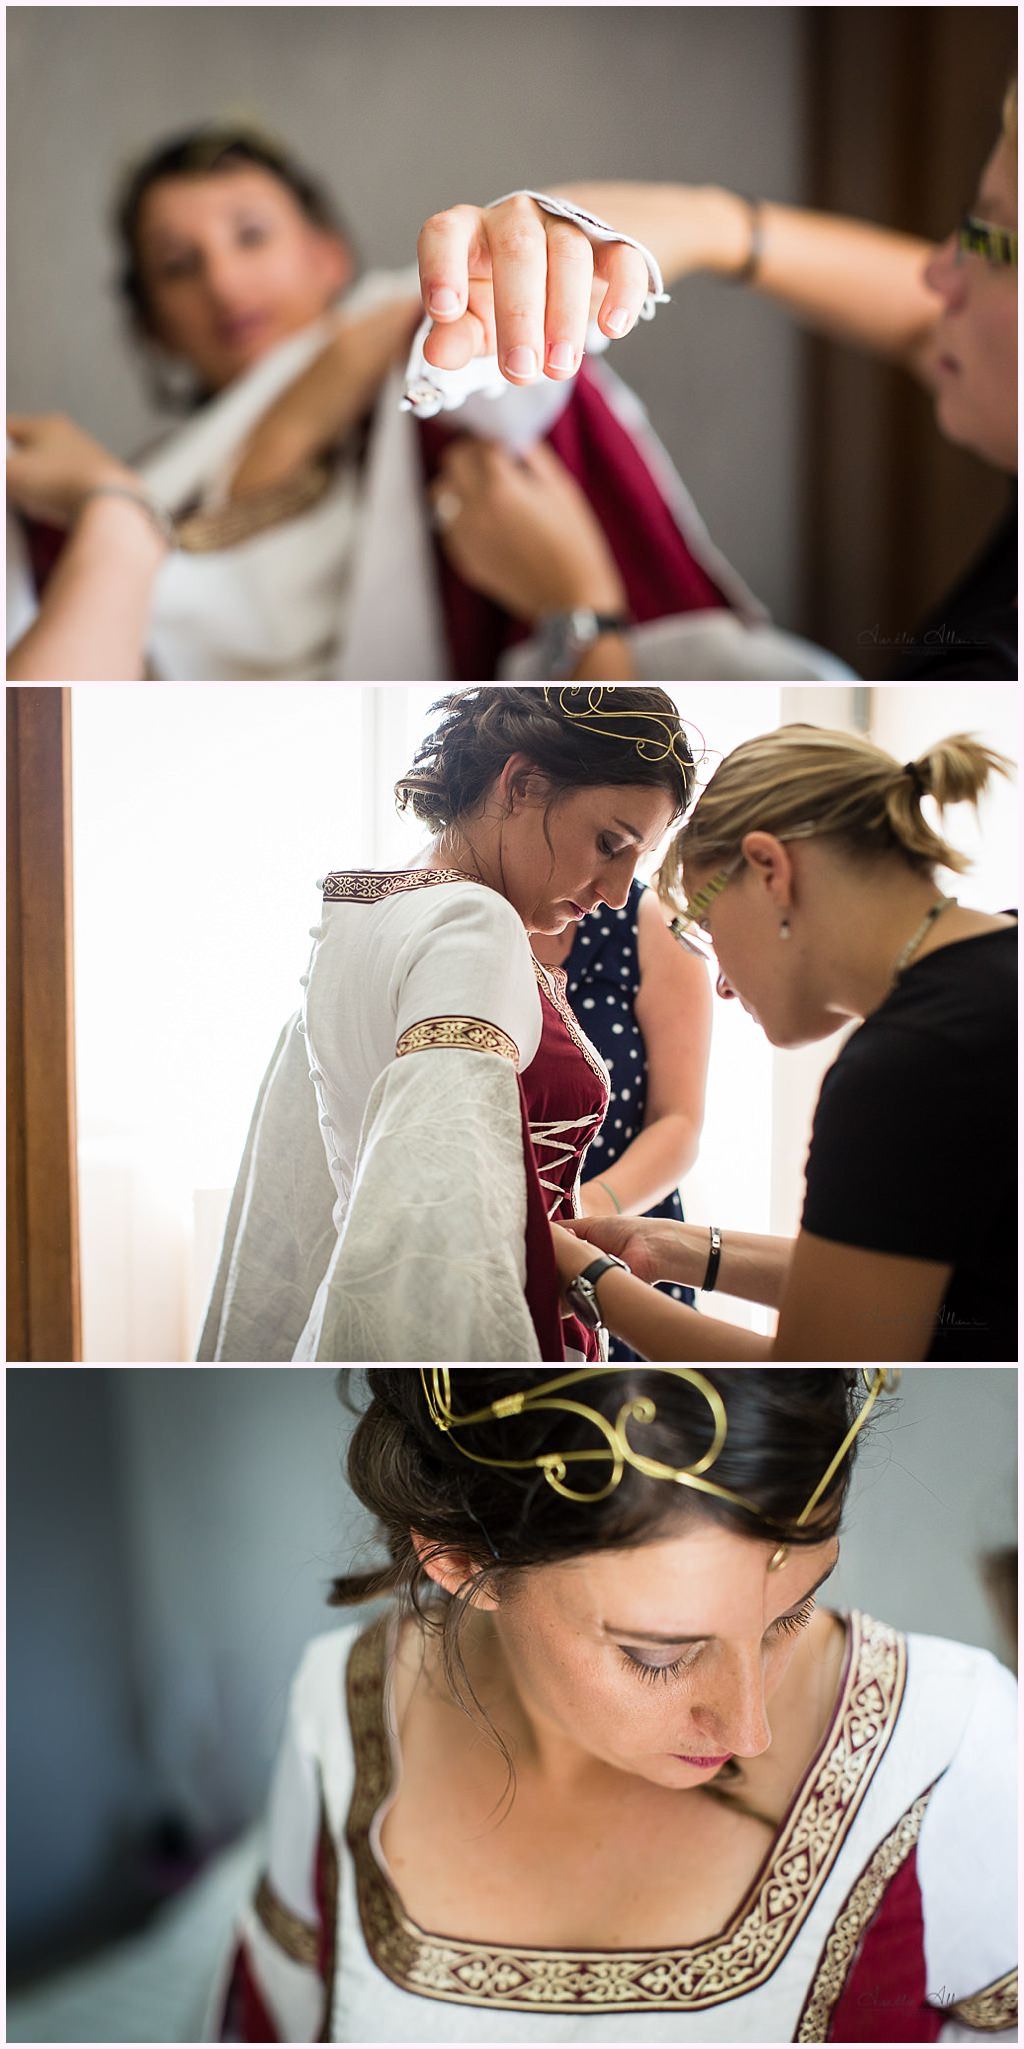 habillage des maries préparatifs mariage medieval en costume photographe mariage aurelie allanic